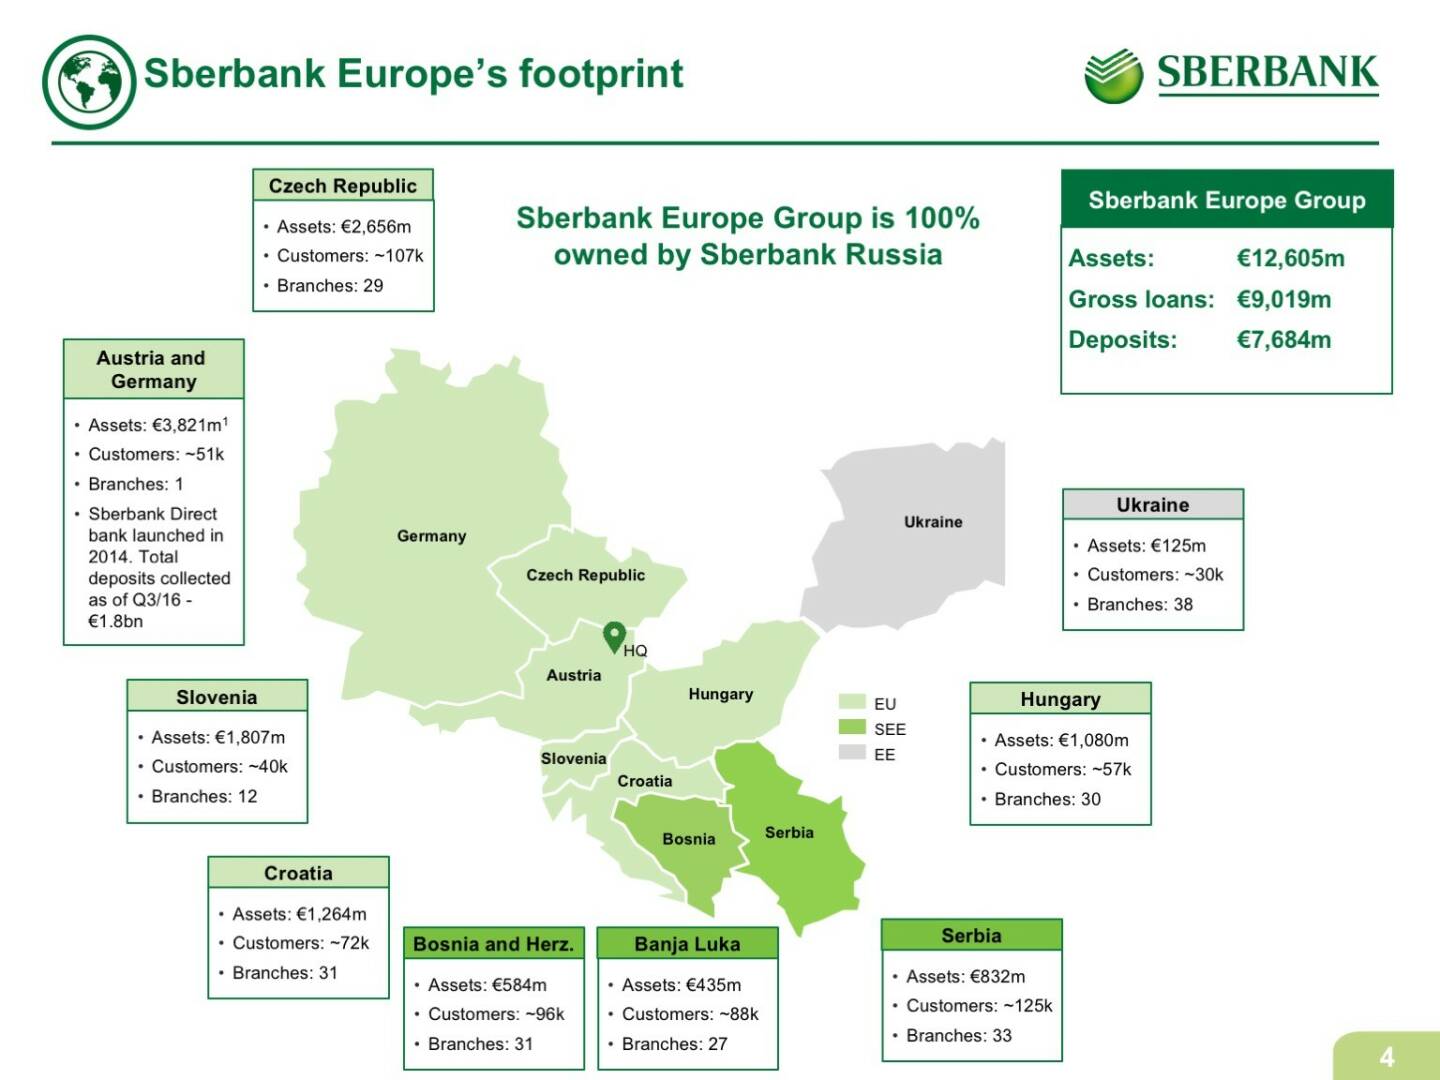 Sberbank Europe's footprint